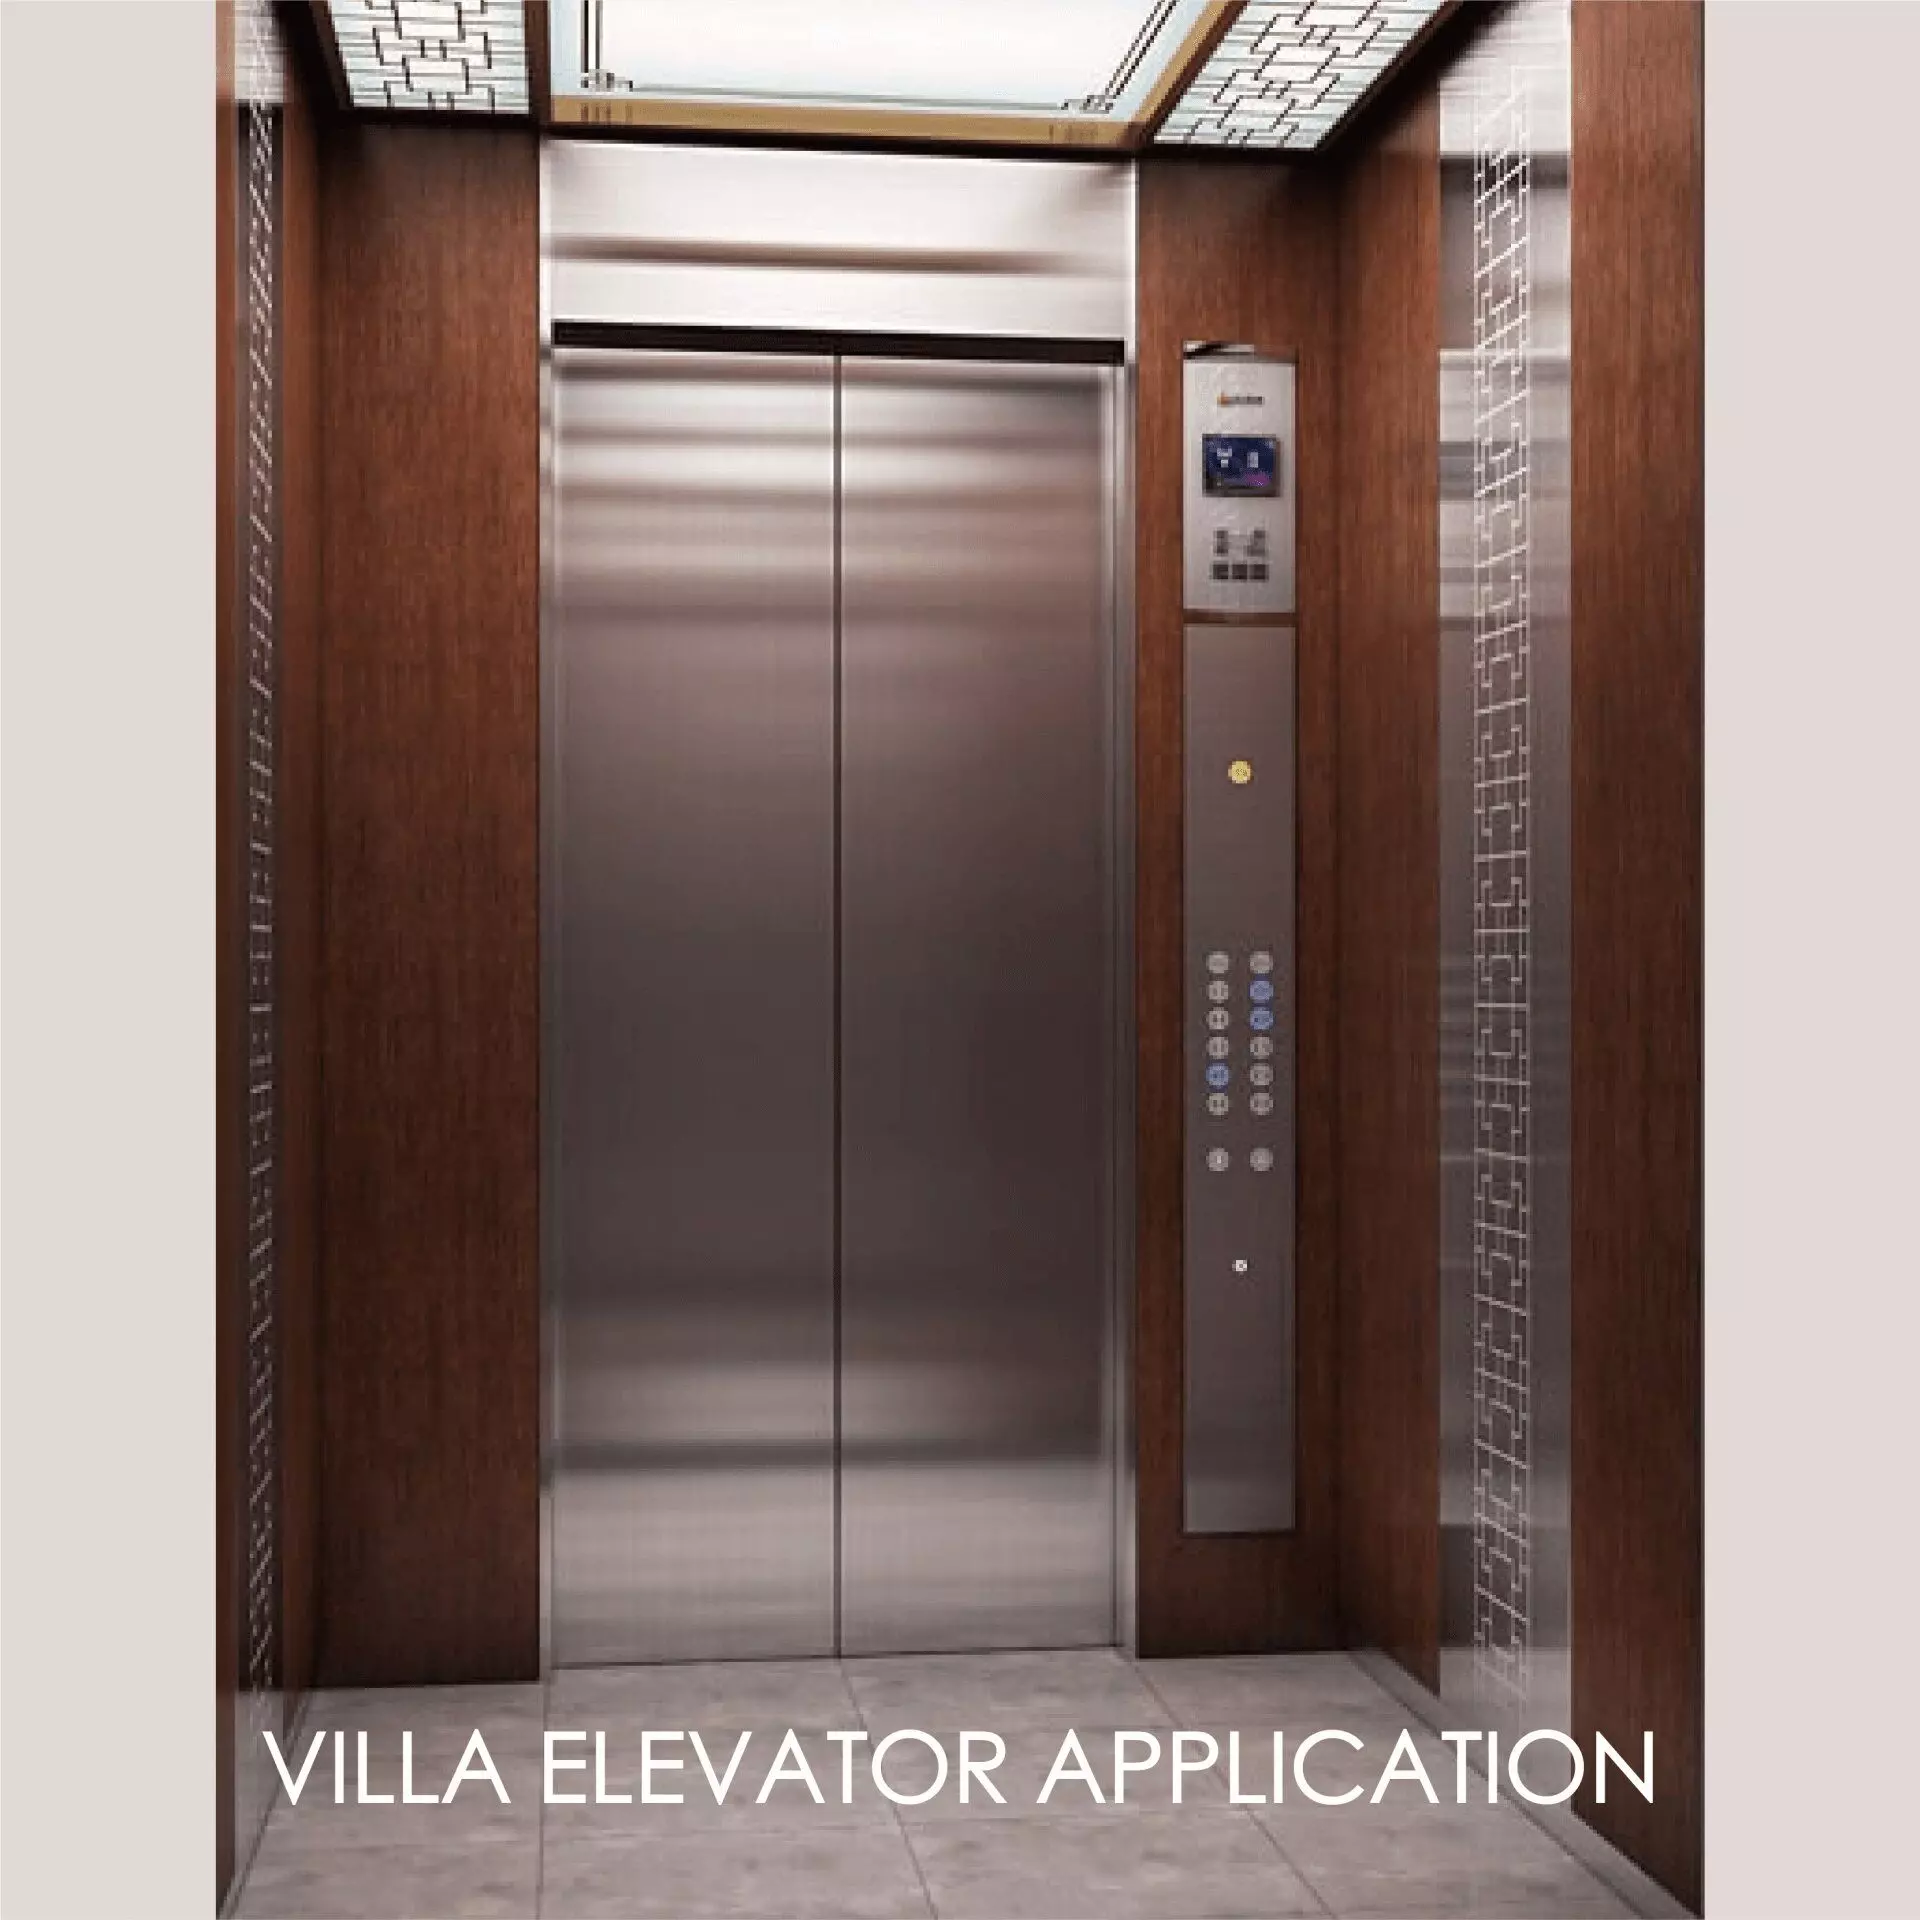 Die Verwendung von laminiertem Metall zur Dekoration der Aufzugstürverkleidung und des Innenraums kann die Ästhetik und Haltbarkeit schaffen.